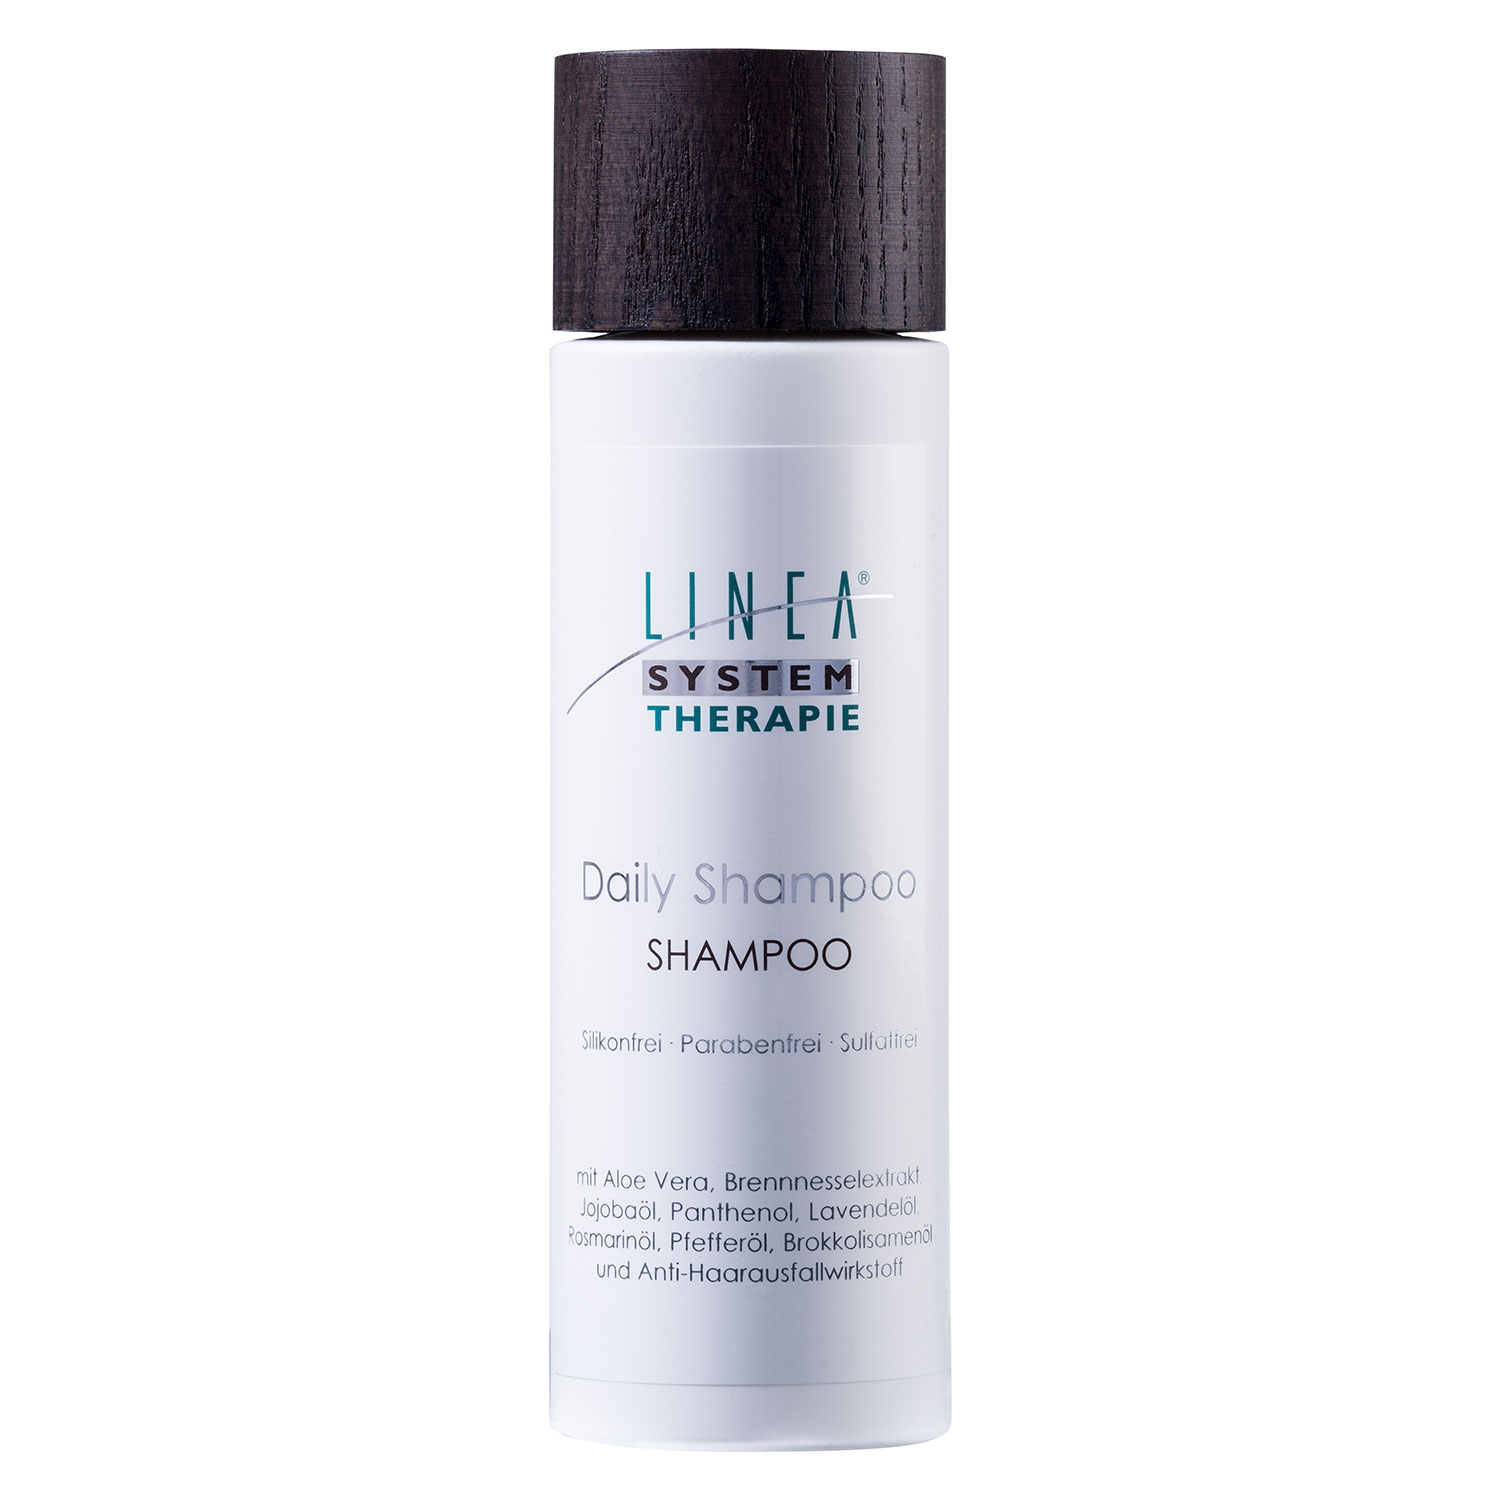 Produktbild von Linea - Daily Shampoo